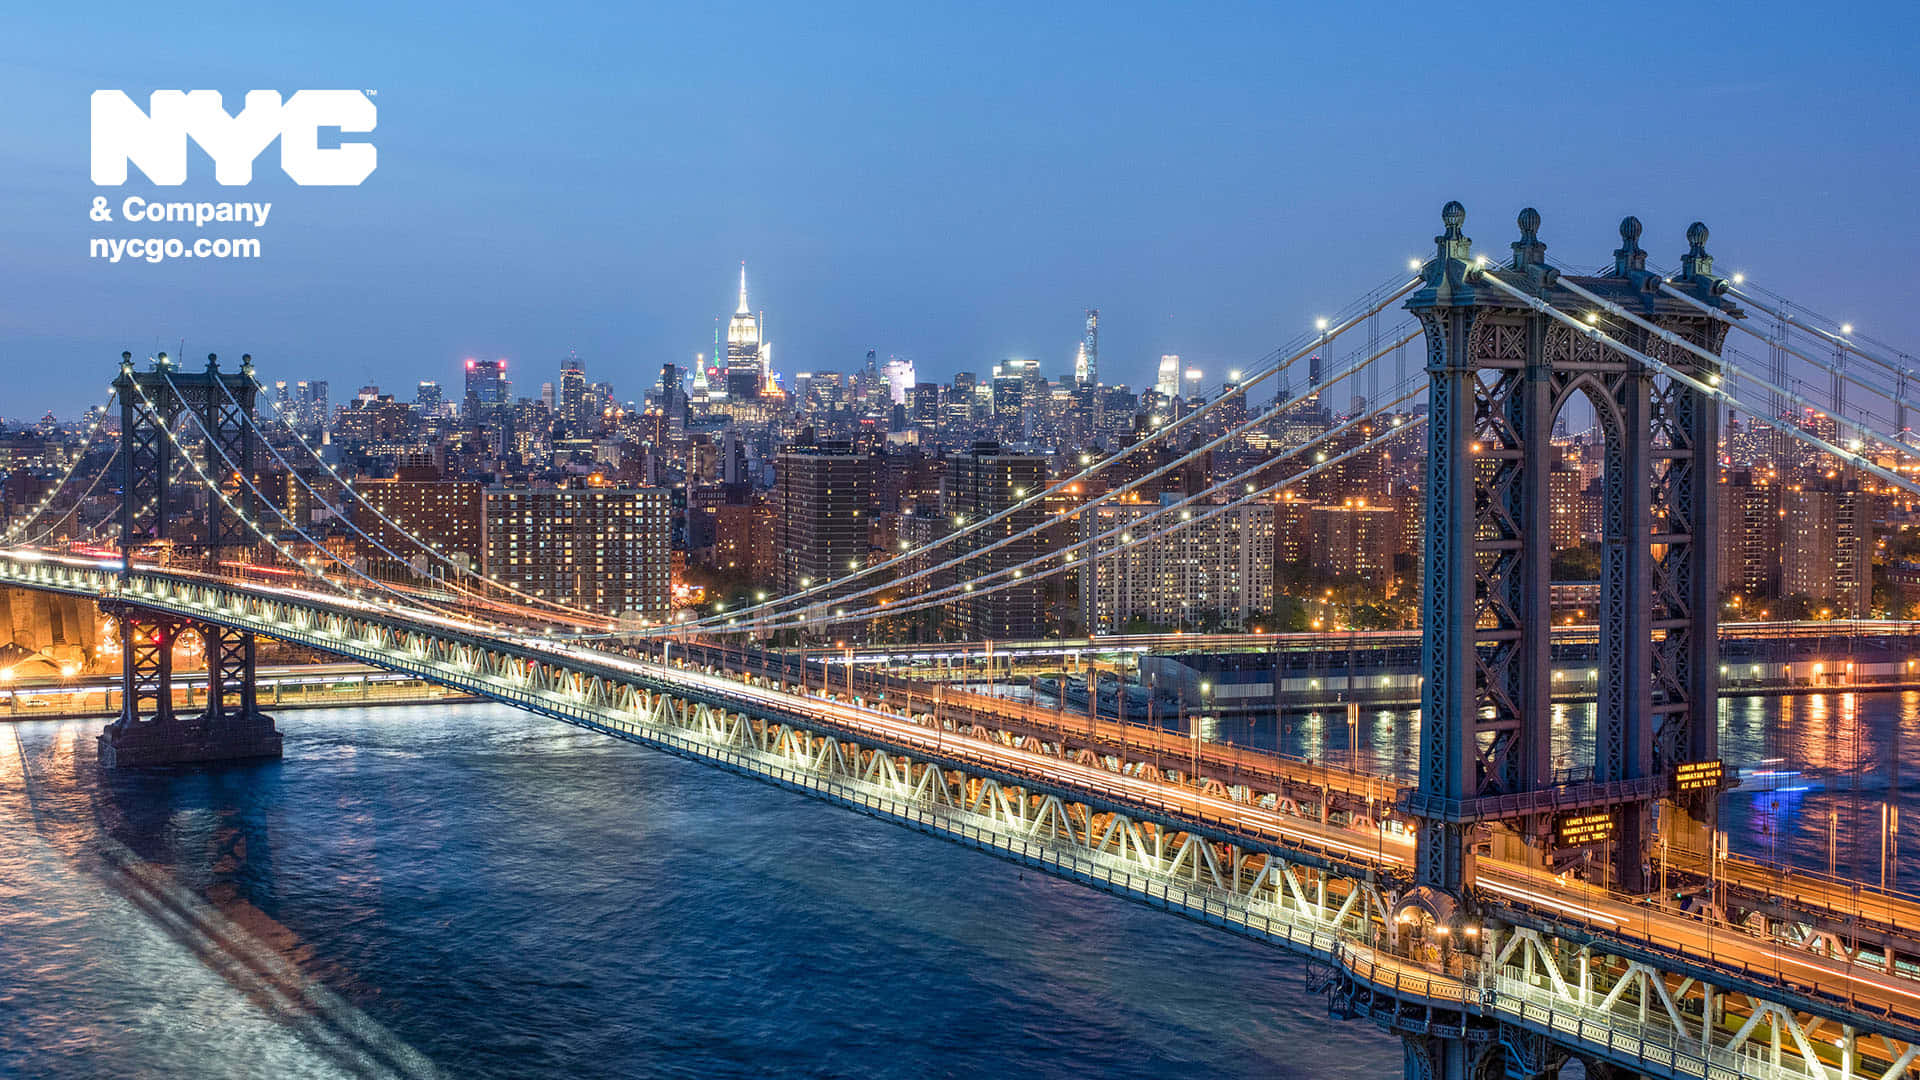 Fundode Tela Hd Da Ponte De Manhattan Em Nova York.